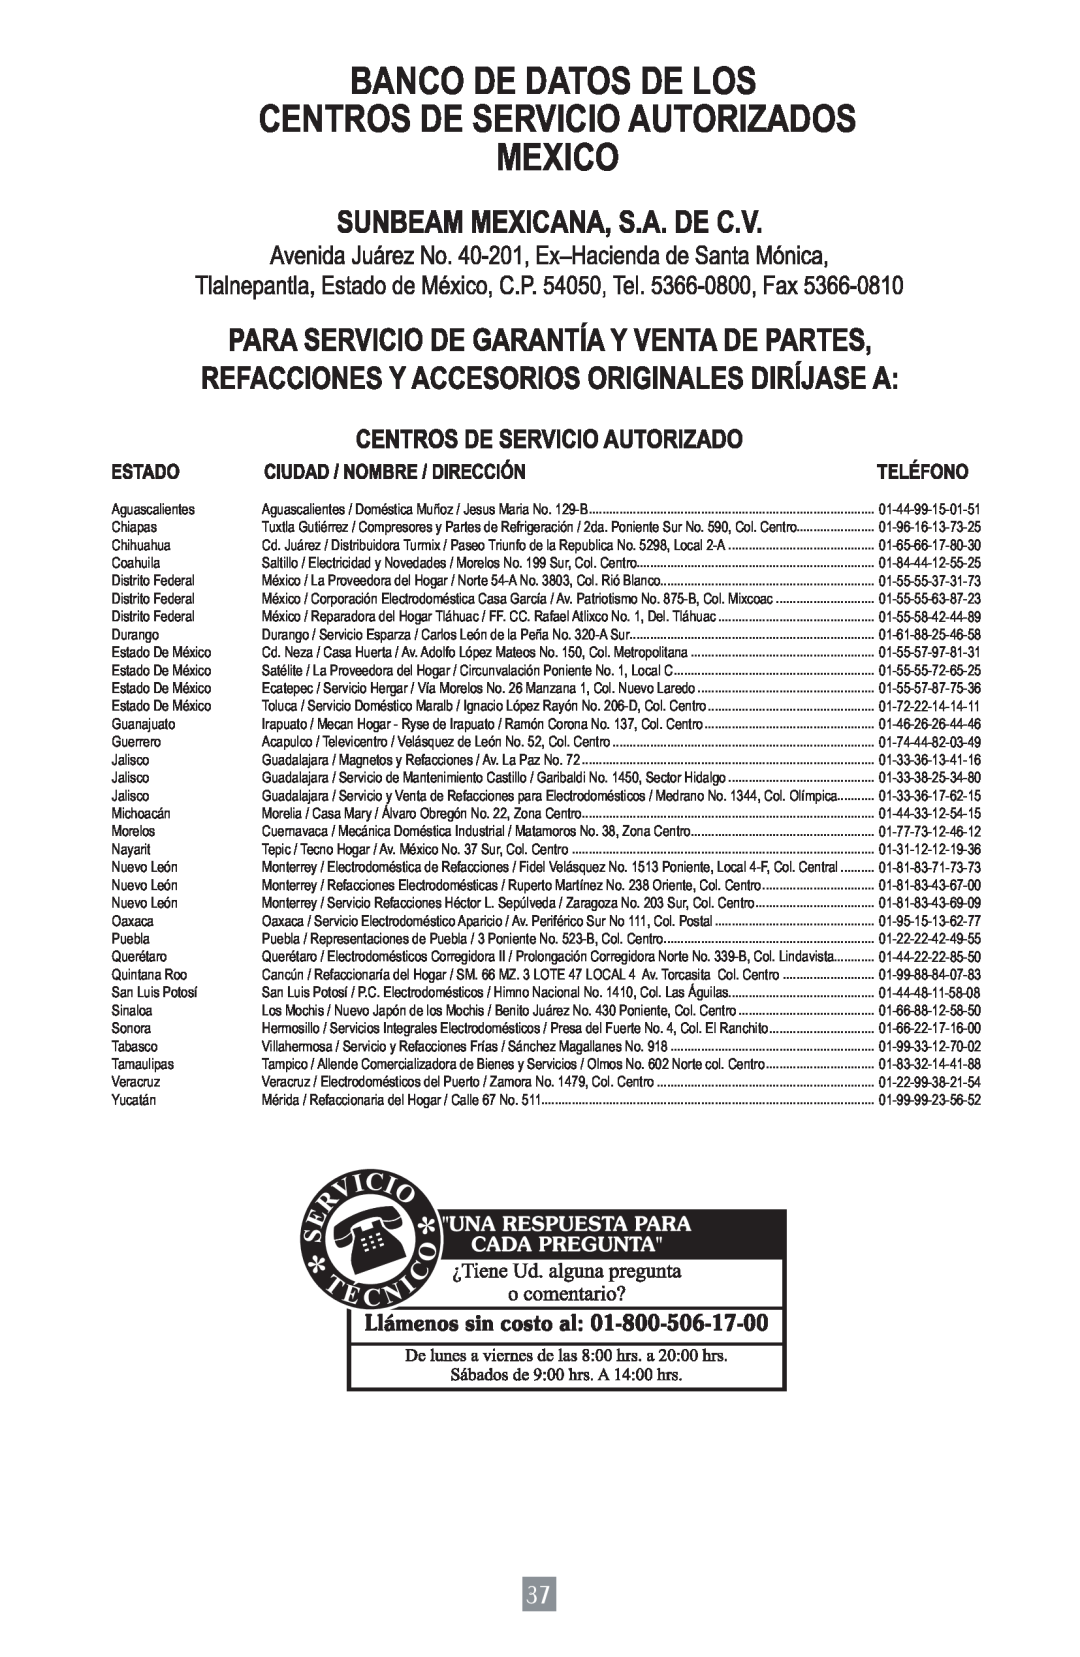 Oster 3157 instruction manual Banco De Datos De Los Centros De Servicio Autorizados Mexico 